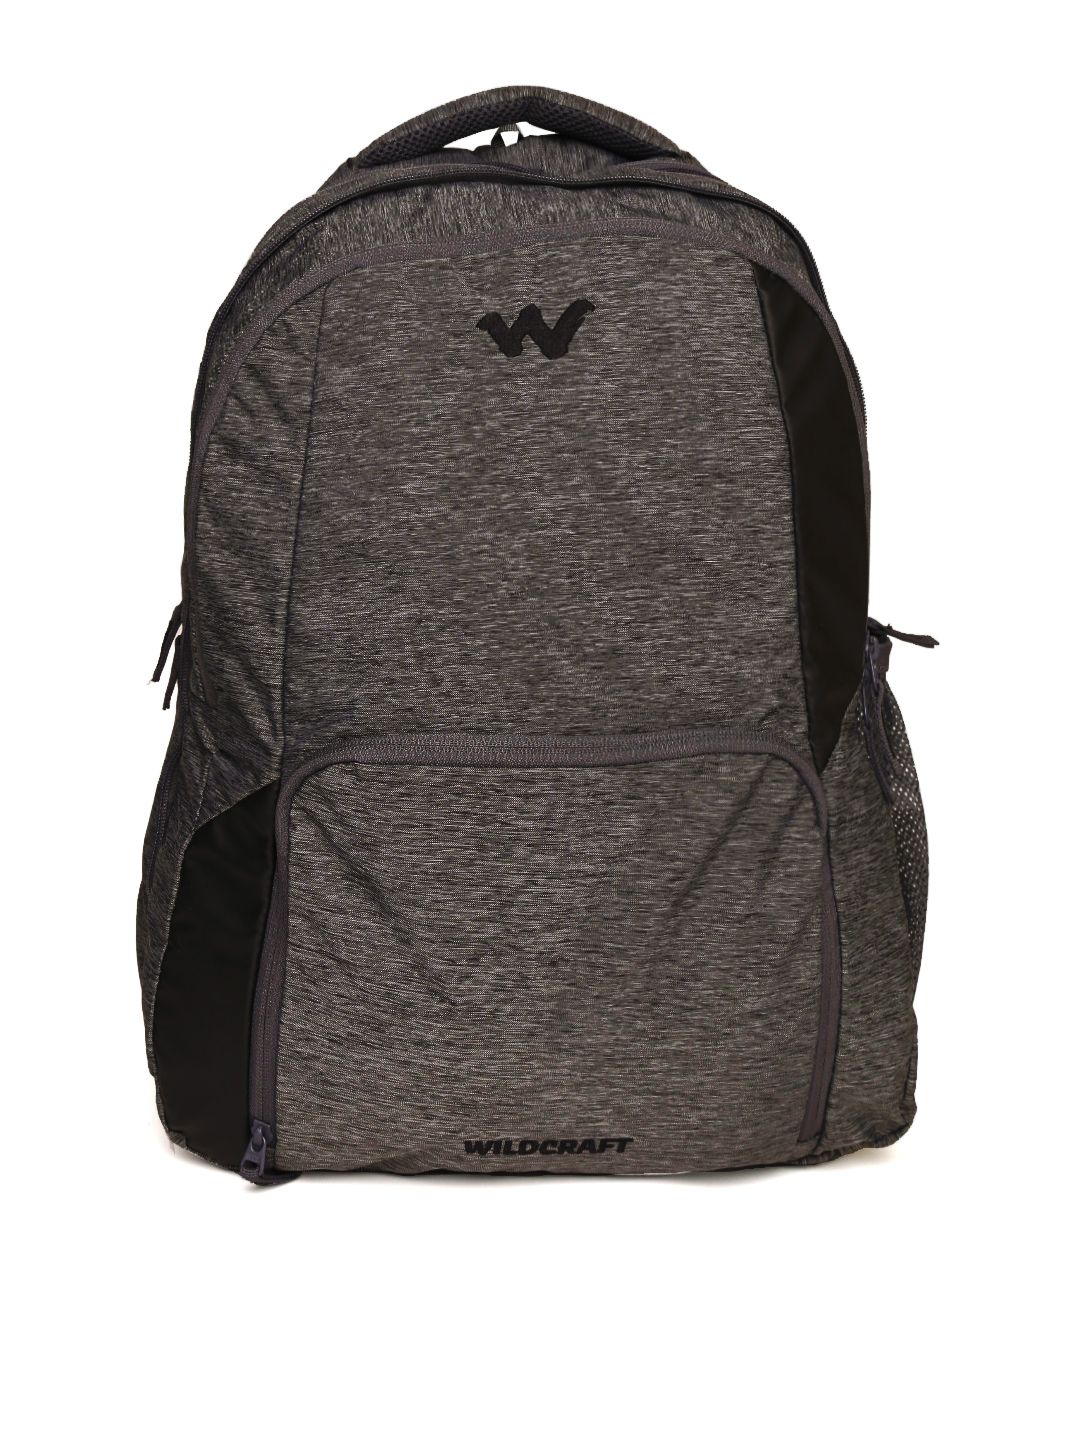 Wildcraft Unisex Grey Melange Geek 3.0 Backpack Price in India